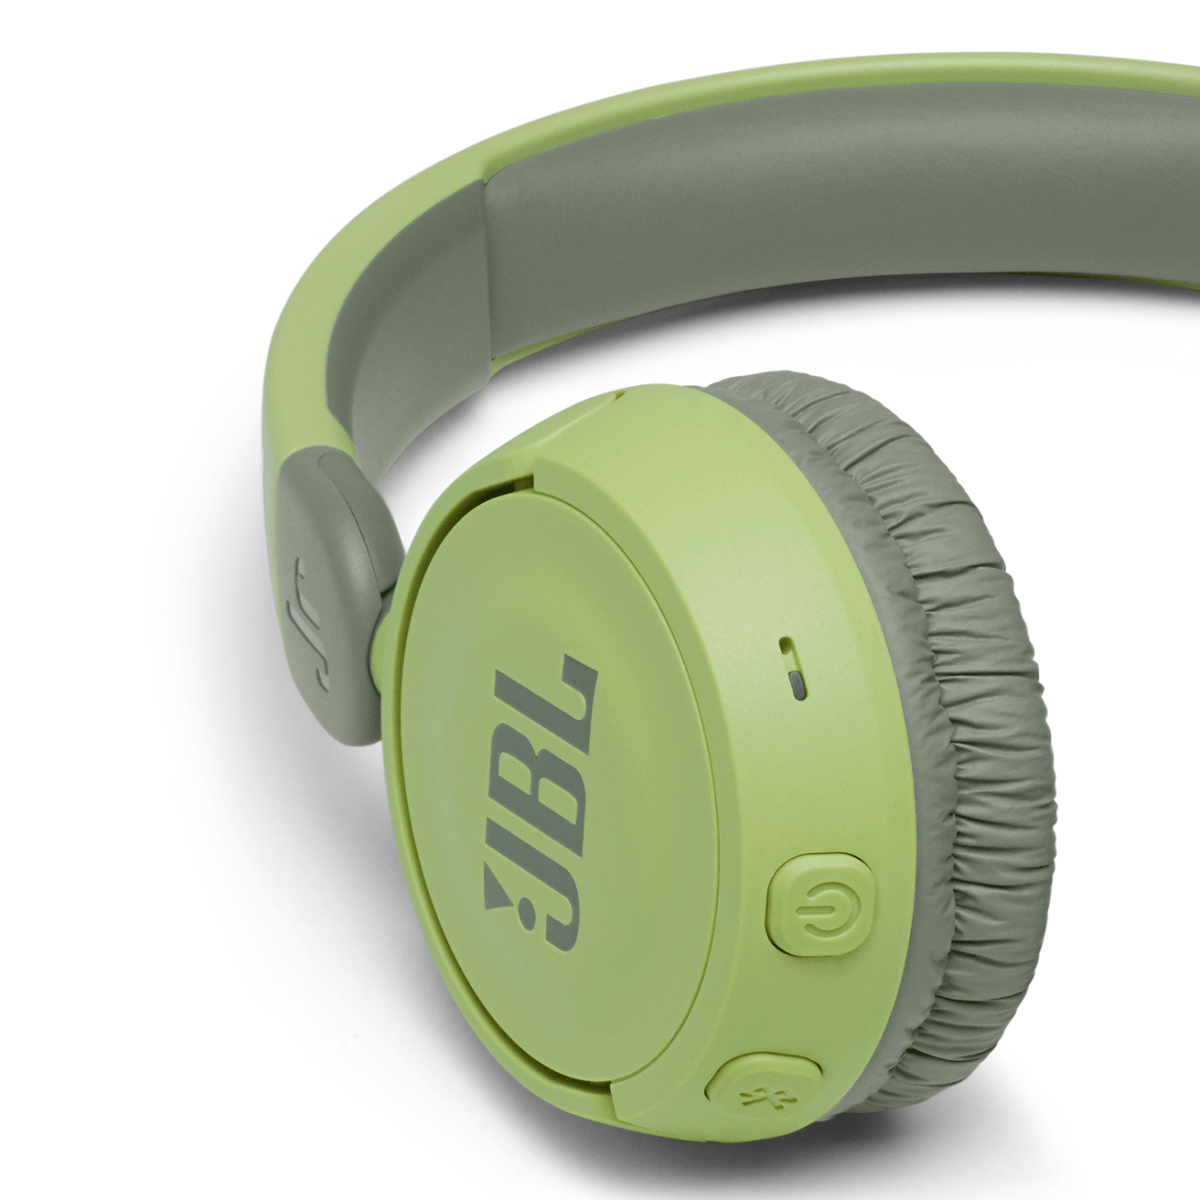 8913314283550 Jbl &Lt;H1&Gt;Jbl Jr310Btred Kids Wireless On-Ear Headphones - Green&Lt;/H1&Gt; &Lt;Ul&Gt; &Lt;Li&Gt;Jbl Safe Sound&Lt;/Li&Gt; &Lt;Li&Gt;Bluetooth Enabled&Lt;/Li&Gt; &Lt;Li&Gt;Built-In Mic&Lt;/Li&Gt; &Lt;Li&Gt;30-Hour Battery Life&Lt;/Li&Gt; &Lt;Li&Gt;Comfort Fit&Lt;/Li&Gt; &Lt;/Ul&Gt; Brand: Jbl Colour: Red Connectivity Technology: Wireless Model Name: Jbl Jr310Btblu Form Factor: Over-Ear Jbl Jbl Jr310Btred Kids Wireless On-Ear Headphones - Green